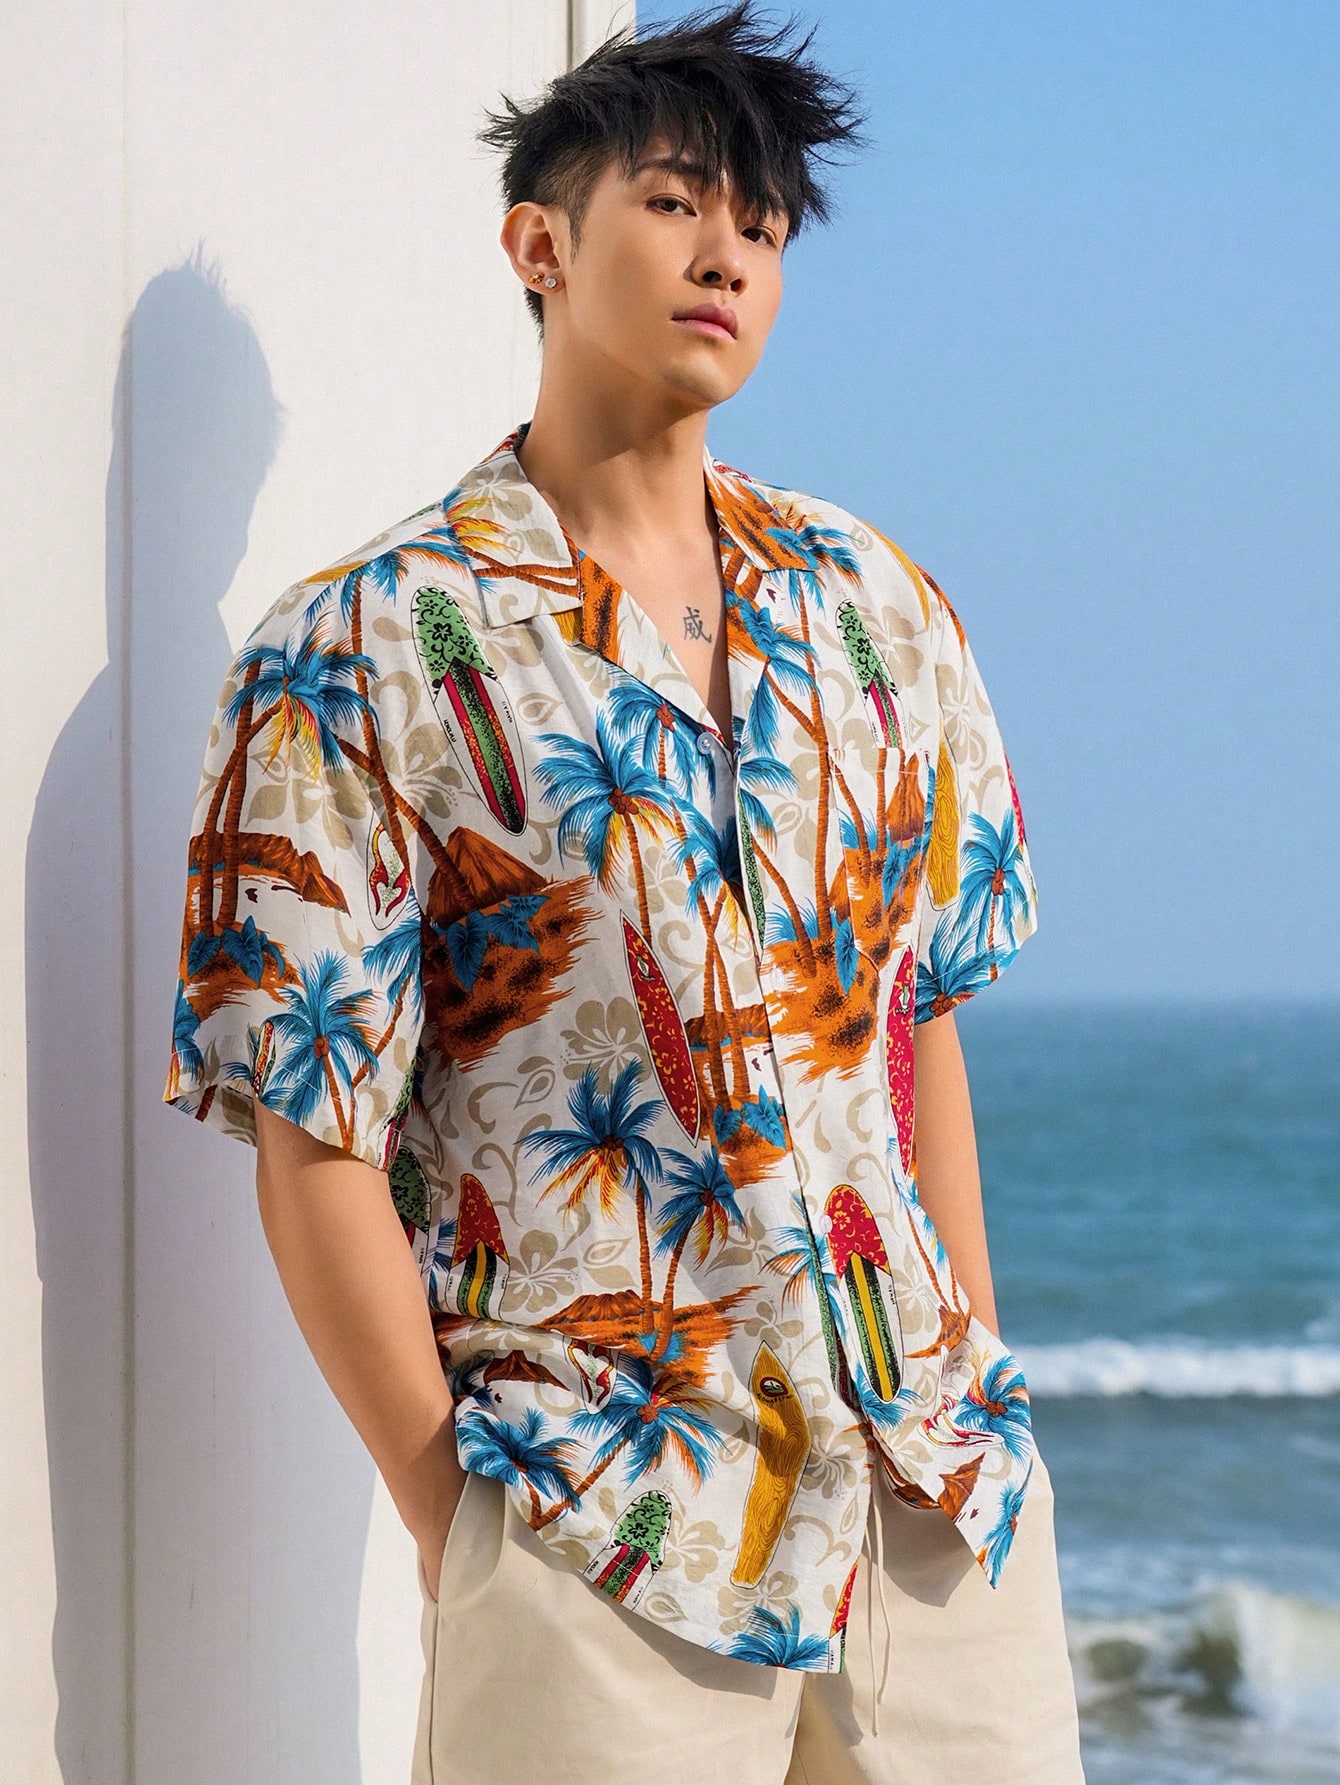 DAZY Мужская летняя пляжная гавайская рубашка с принтом пальм, многоцветный 2022 летняя гавайская рубашка мужская рубашка свободная рубашка с отворотом и коротким рукавом пляжная одежда футболки гавайская мужская